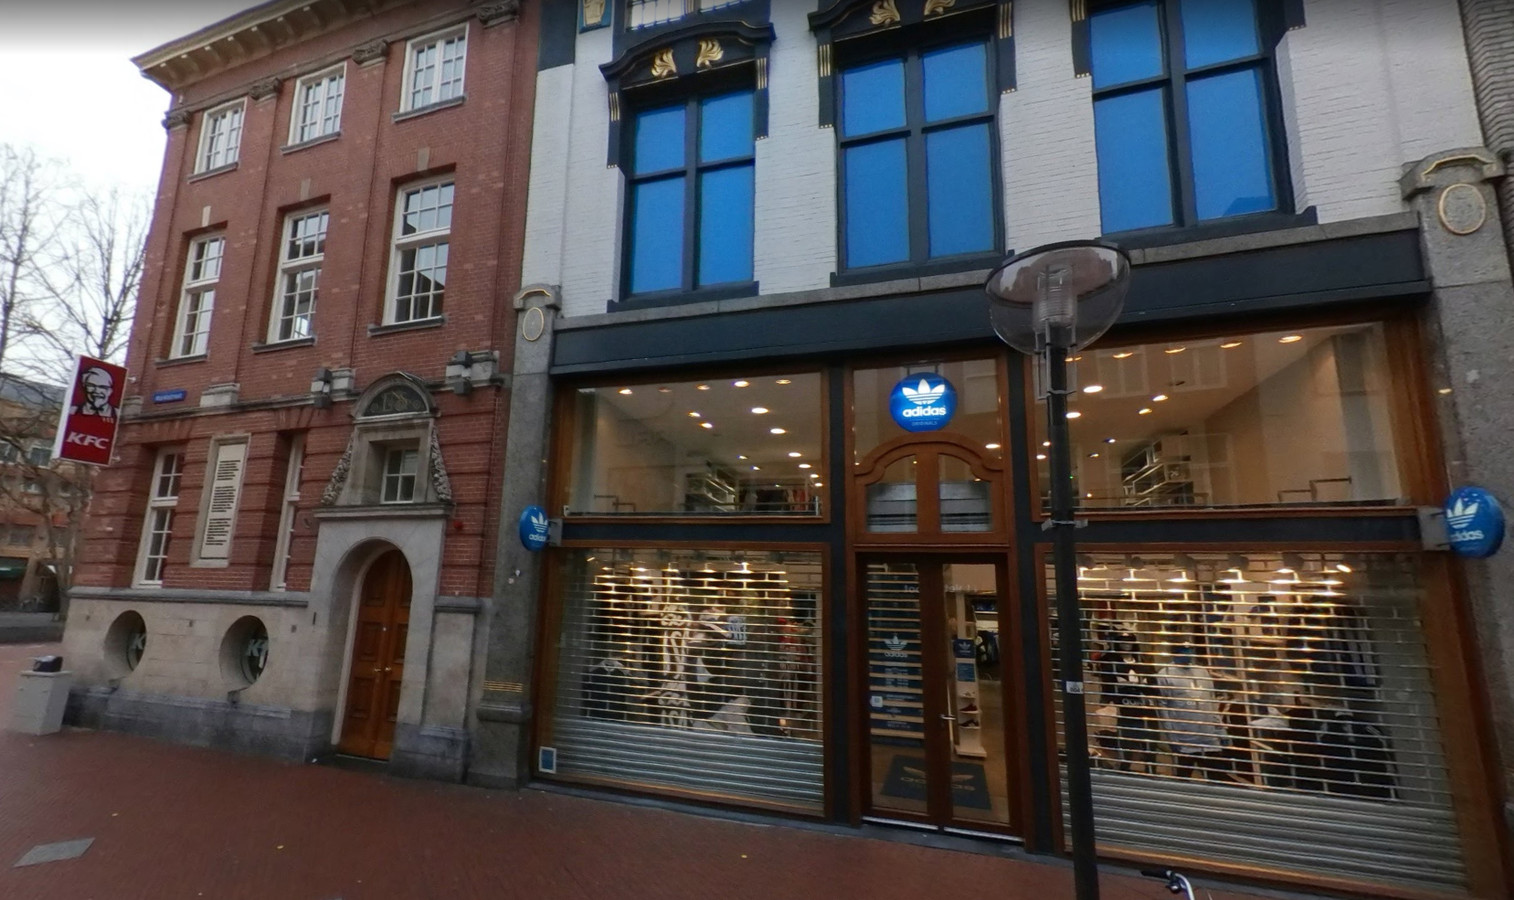 Adidas sluit meeste Original Stores, waaronder die in Breda | bndestem.nl